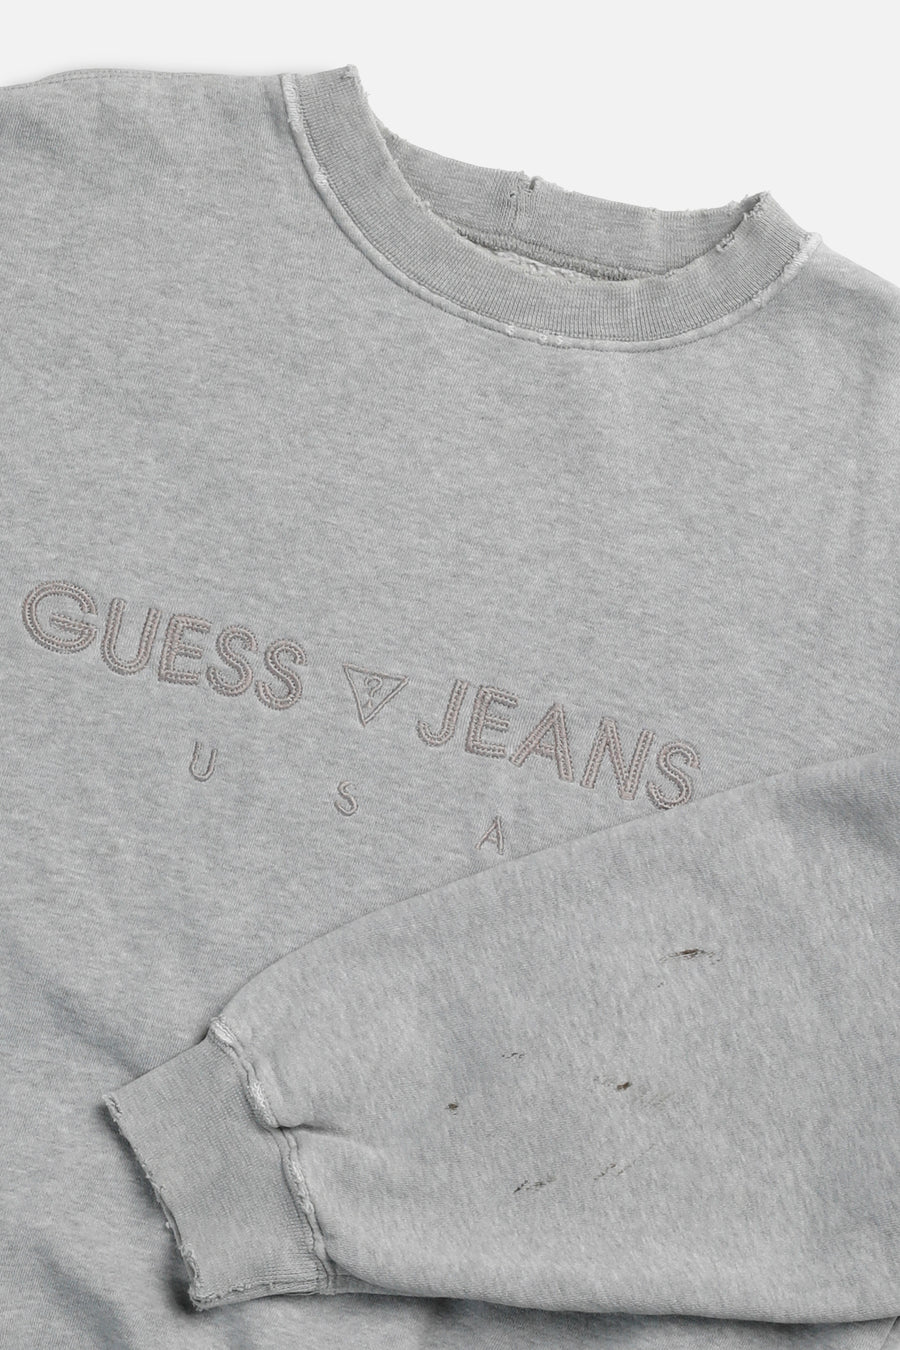 Vintage Guess Sweatshirt - S